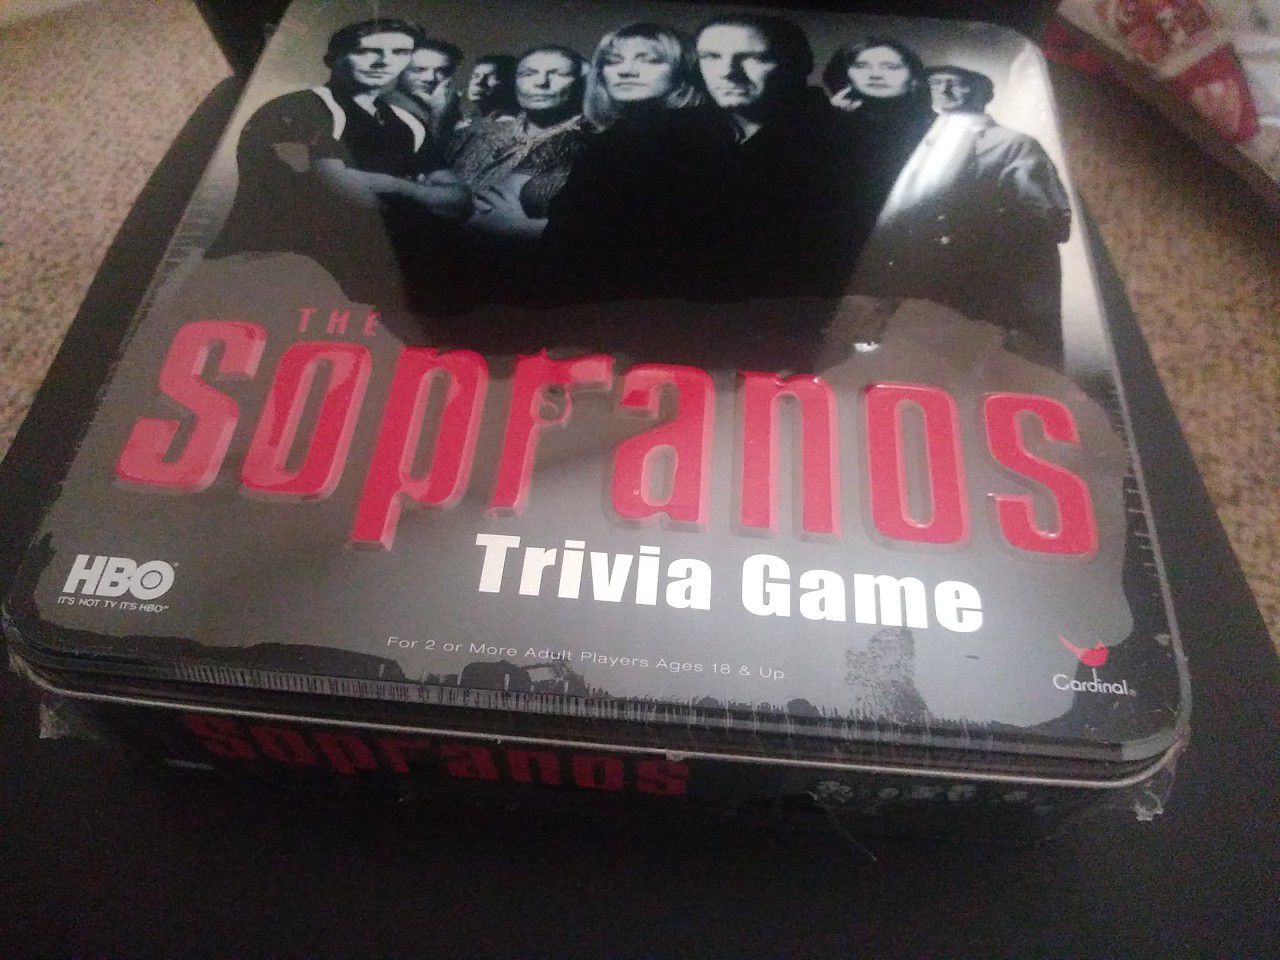 Sopranos board game